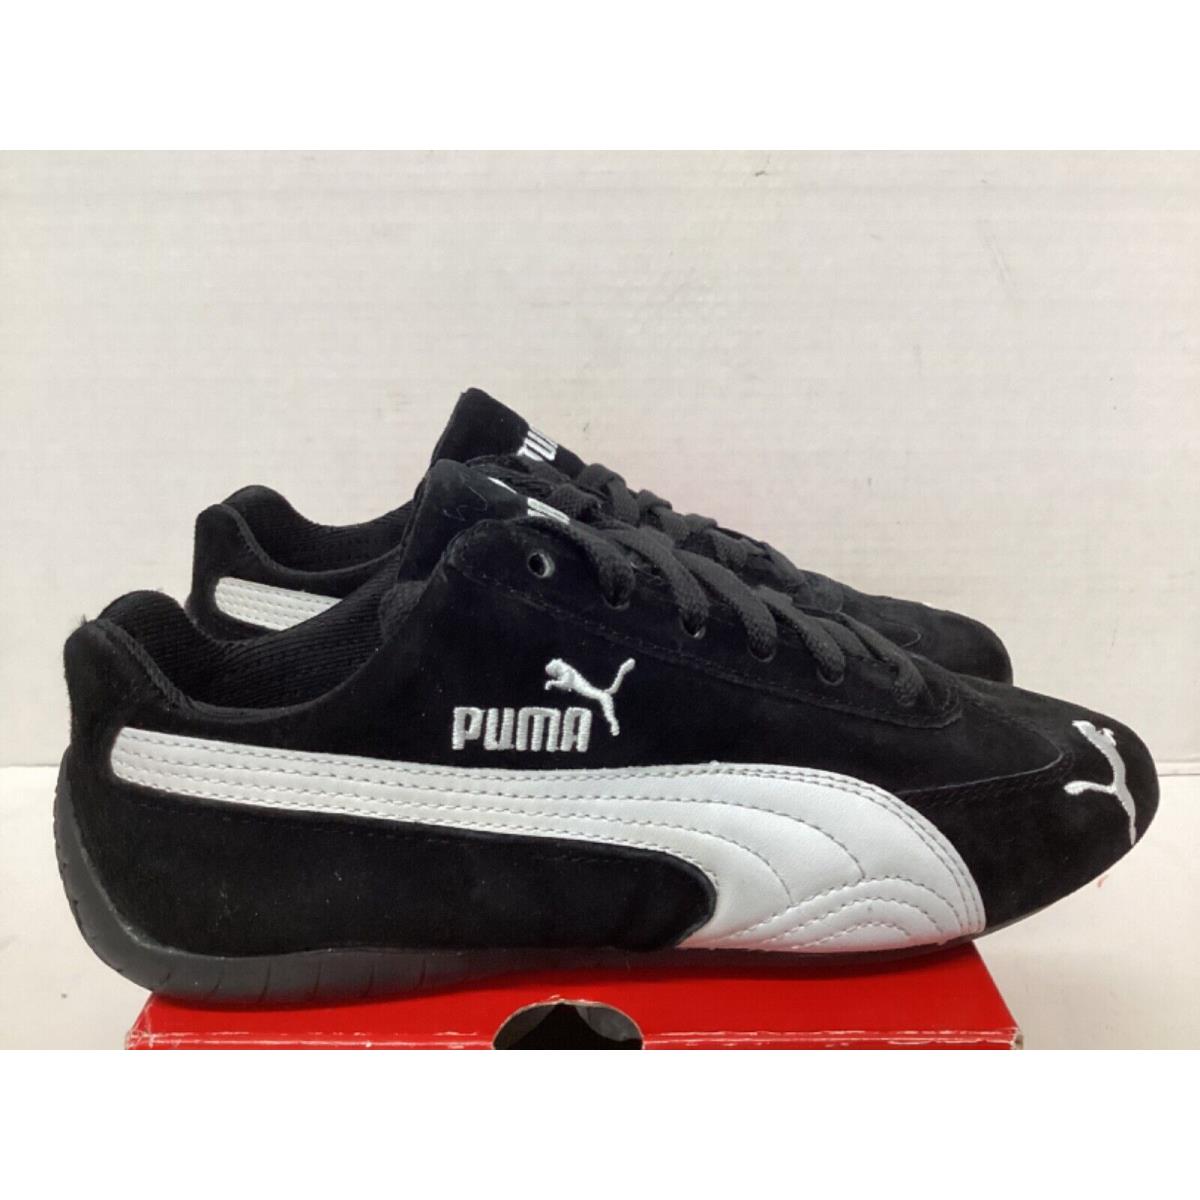 Puma shoes  - Black/white 2